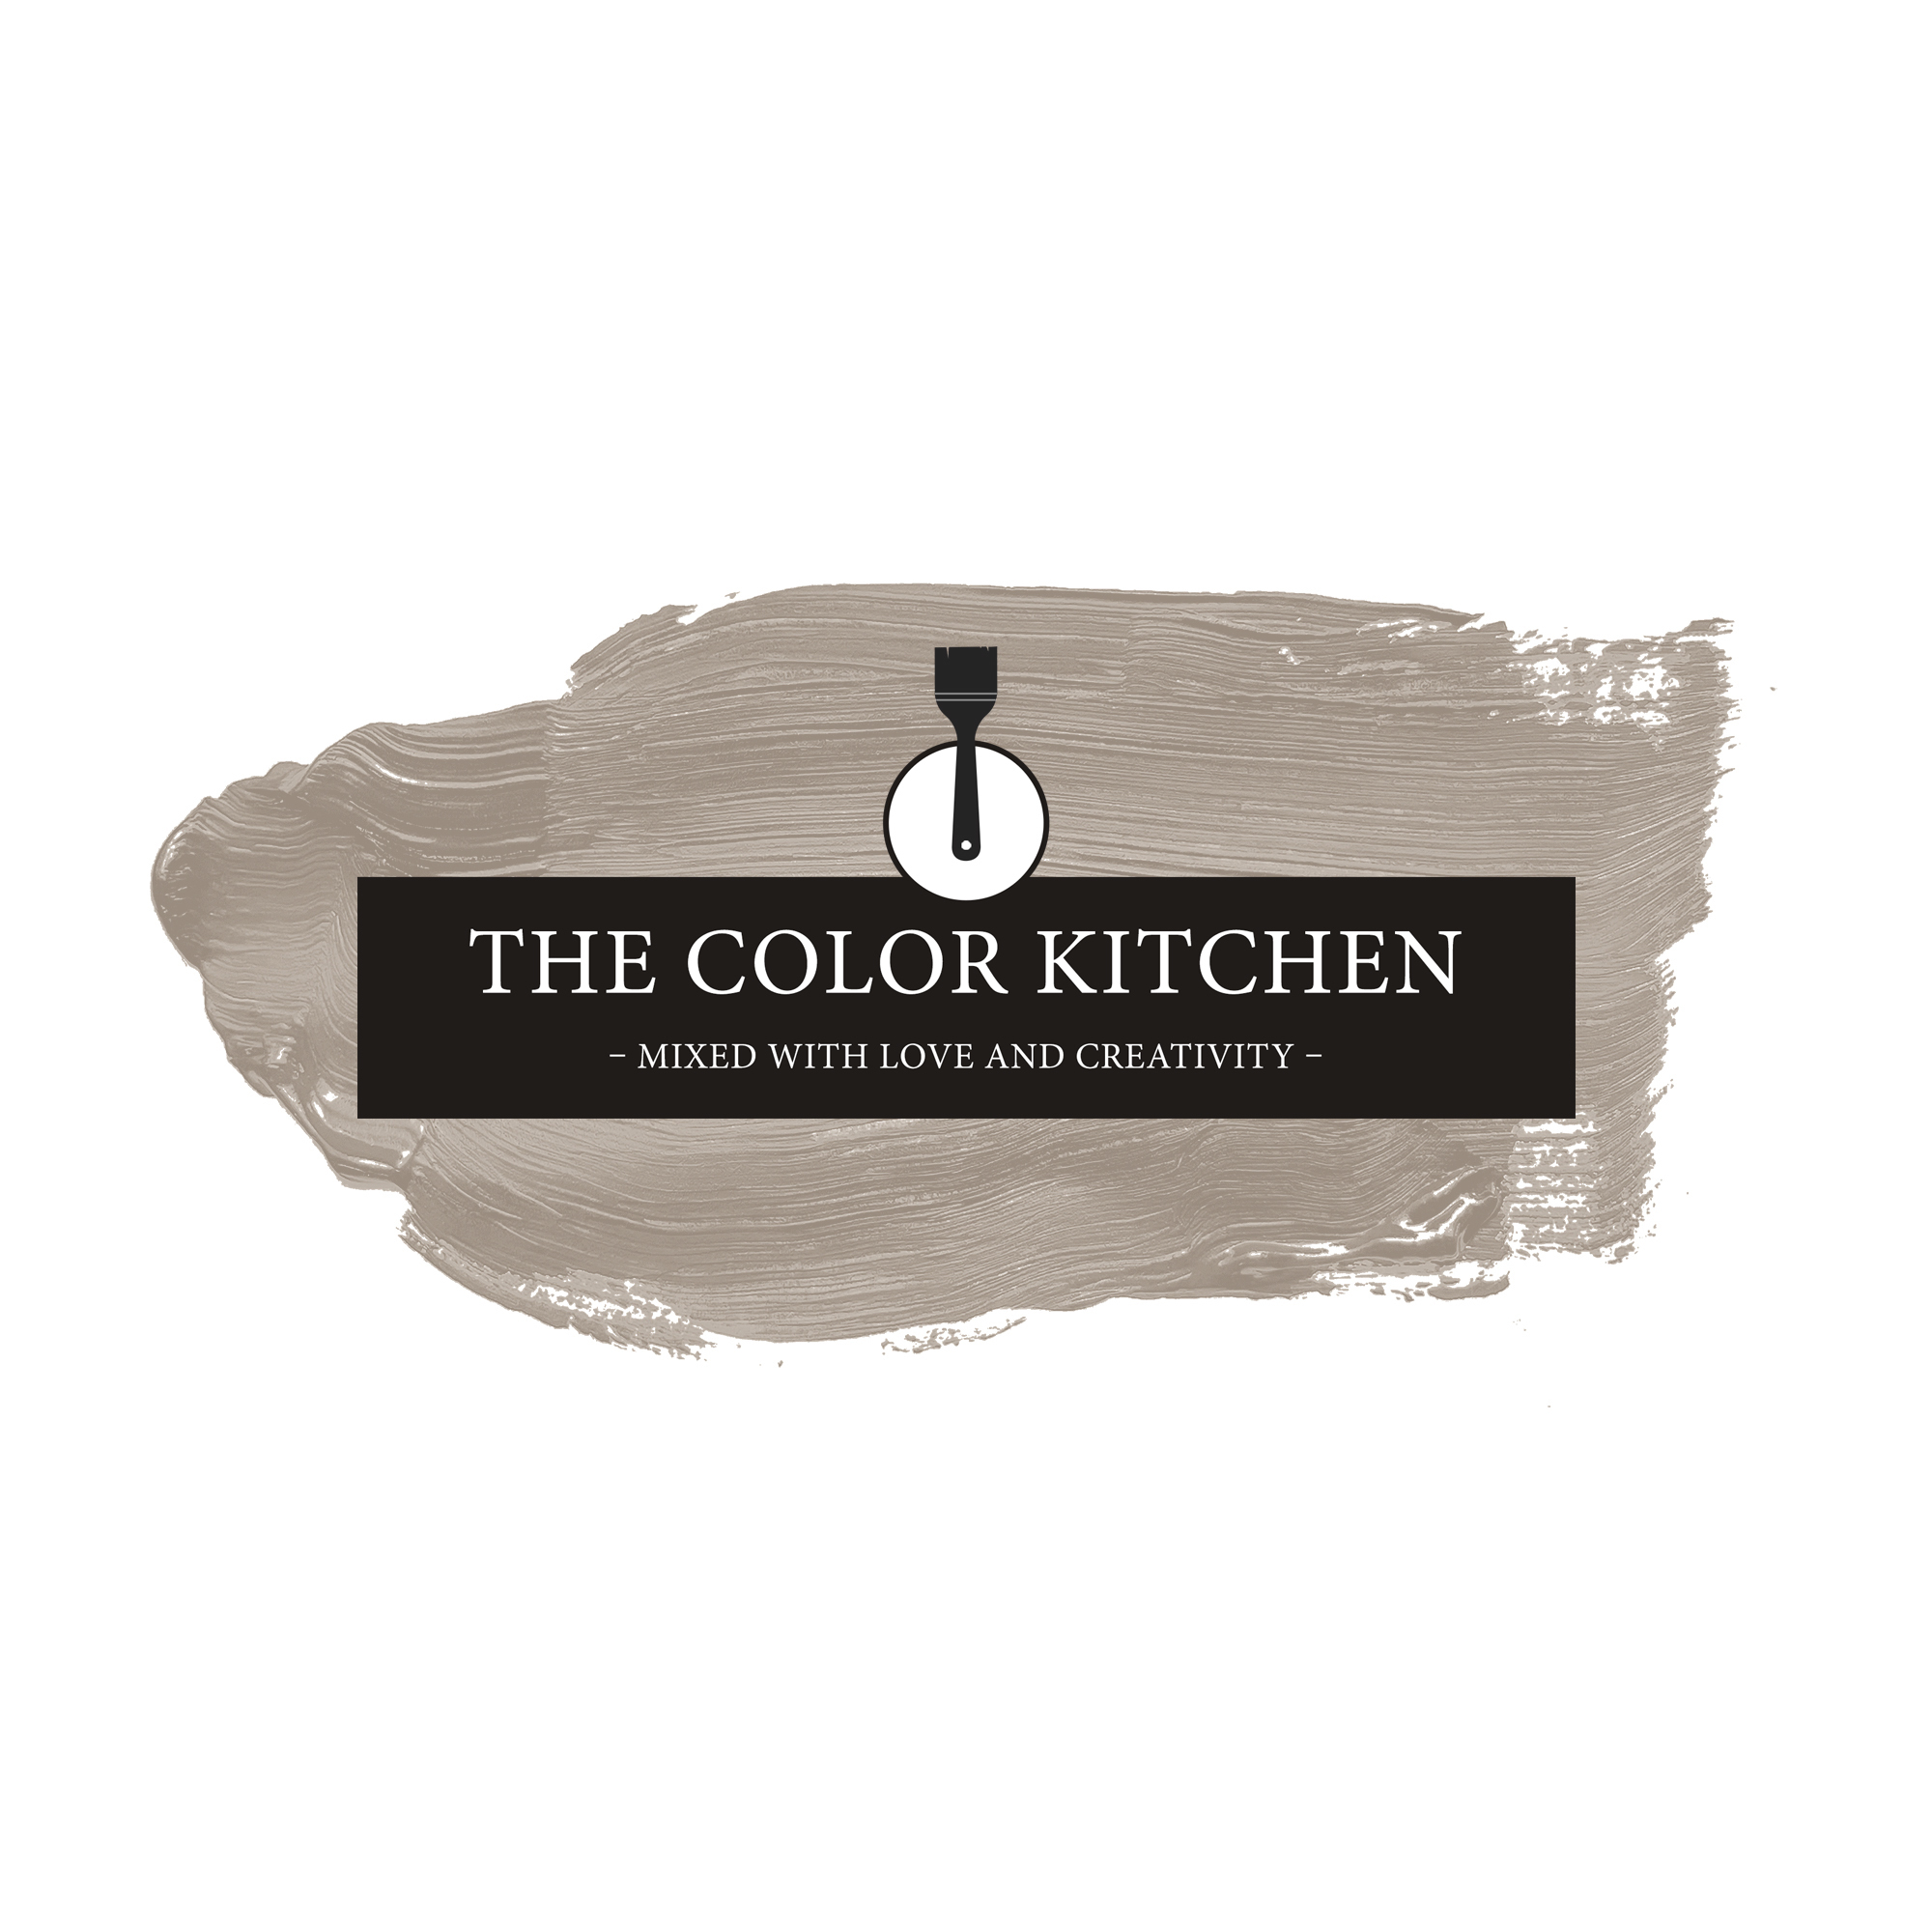 The Color Kitchen Whole Grain 2,5 l